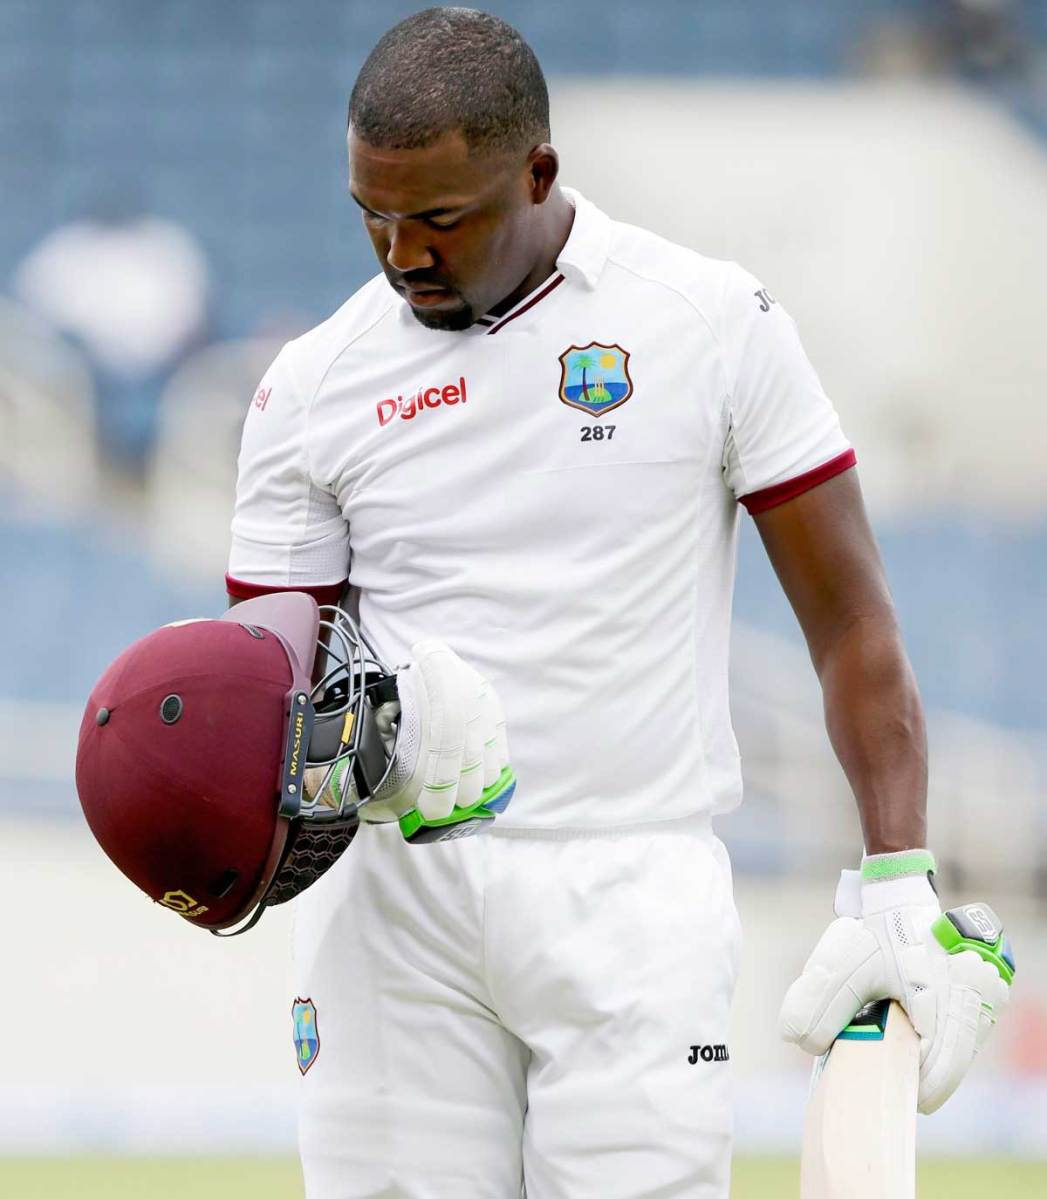 No chance Trinidad’ Darren Bravo returns to Test cricket this year